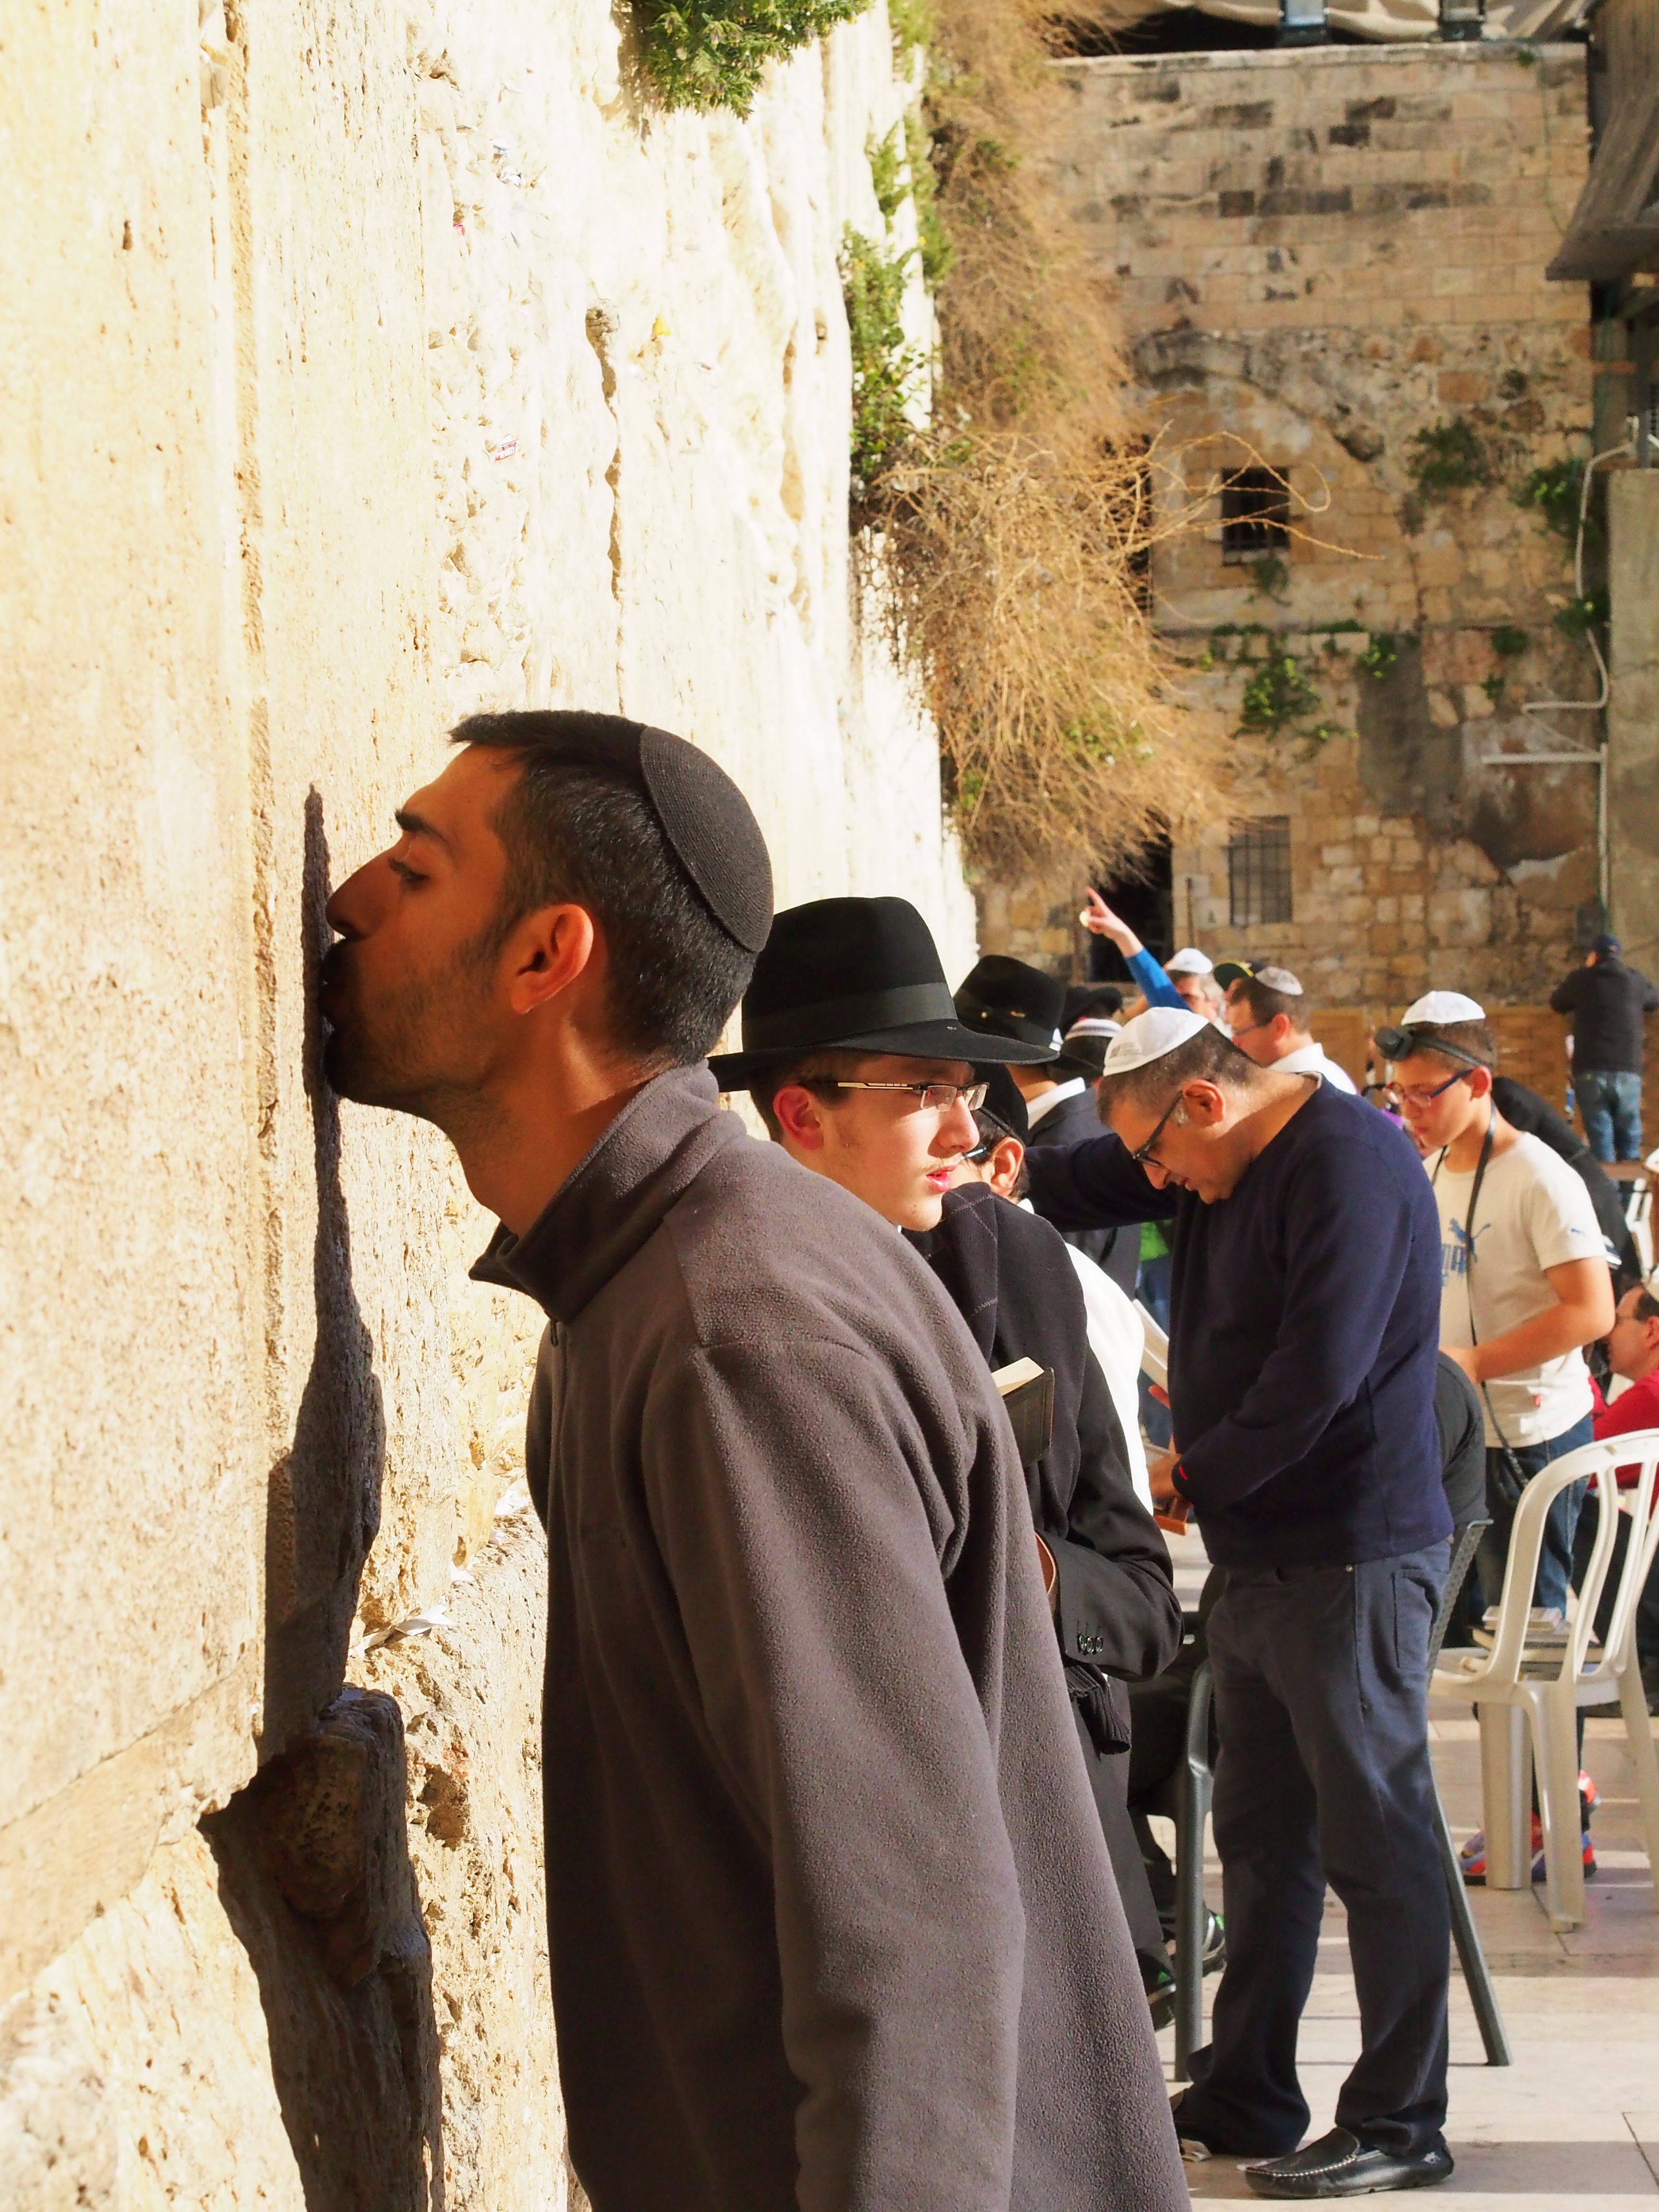 耶路撒冷哭墙流泪事件图片